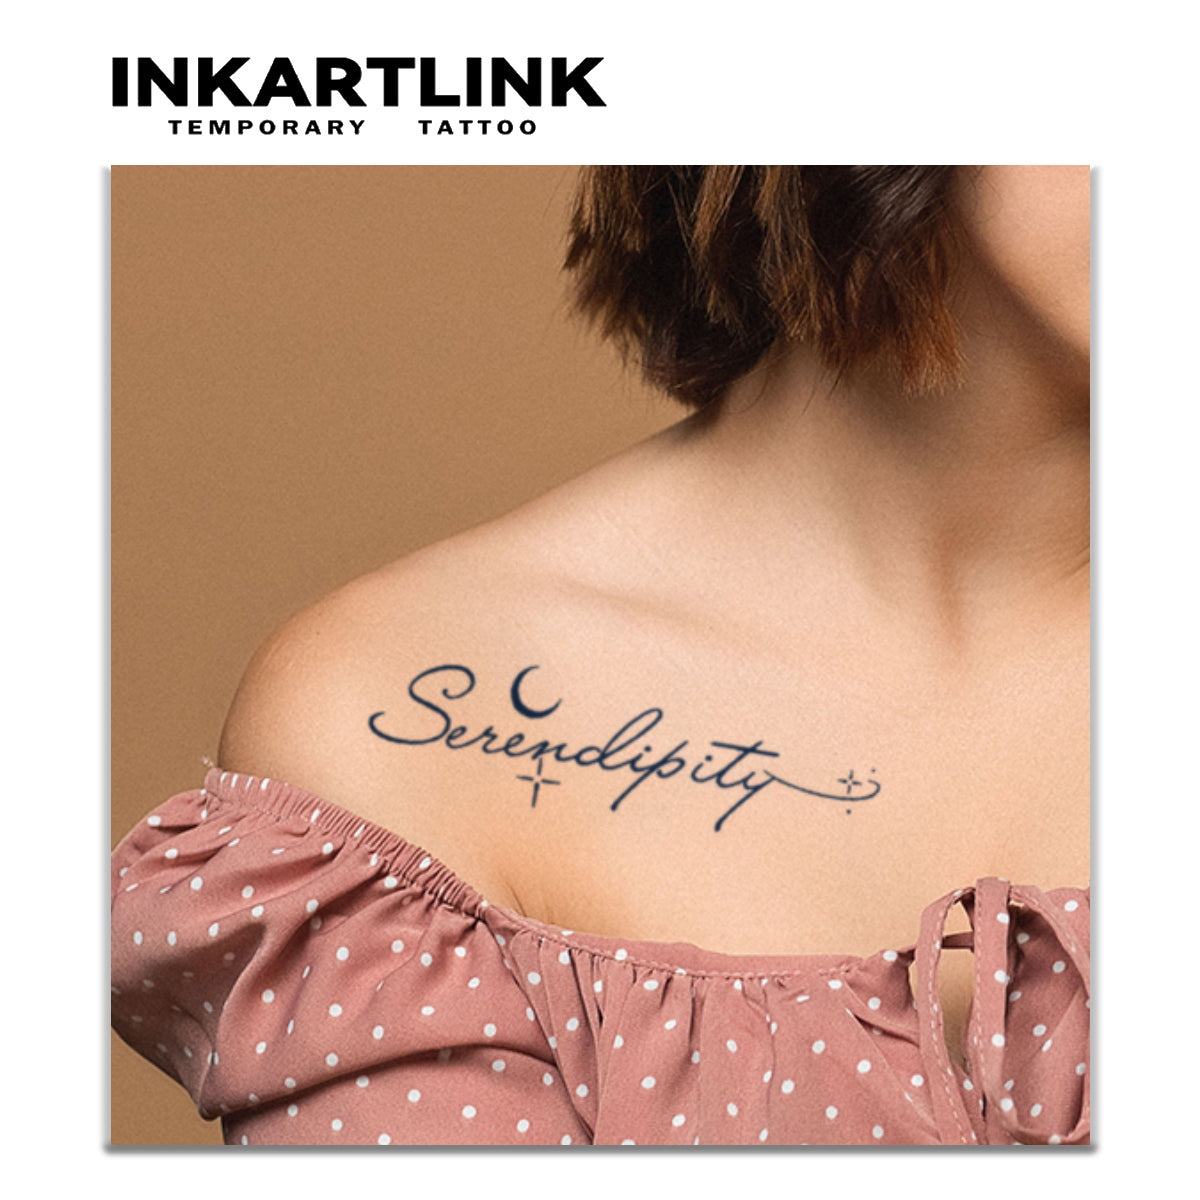 Tattoo uploaded by Bahadır Cem Börekcioğlu • Serendipity 🌸🍃👌🏻  Instagram: @karincatattoo #Serendipity #tattoo #writing #tattoos  #tattoodesign #tattooartist #tattooer #tattoostudio #tattoolove #tattooart  #ink #inked #minimalism #line #flower ...